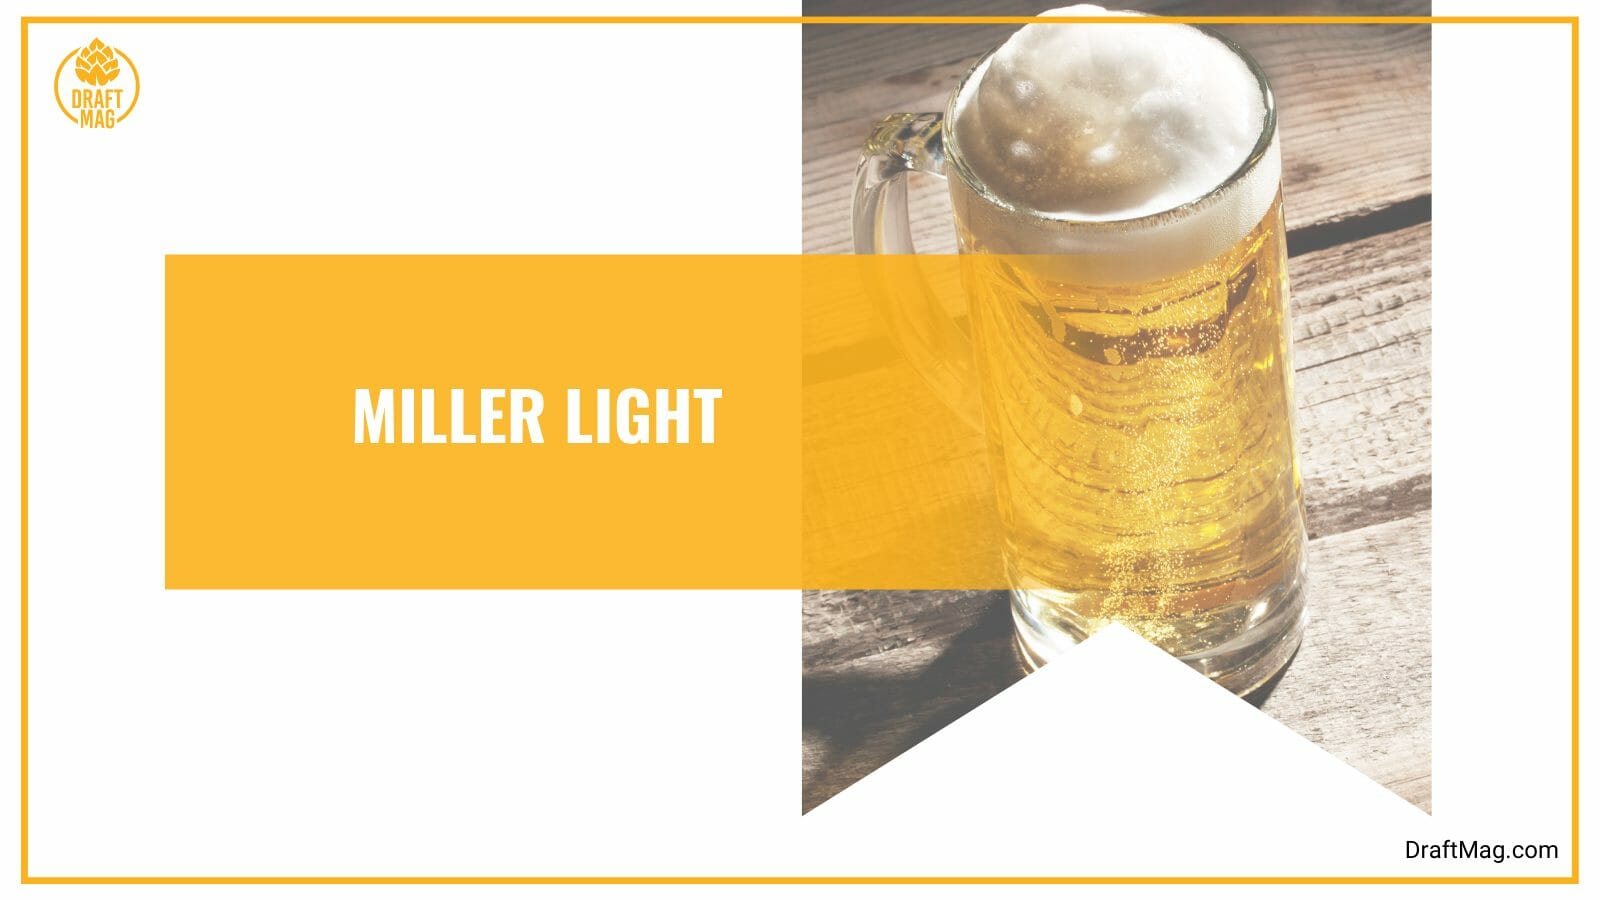 Miller light